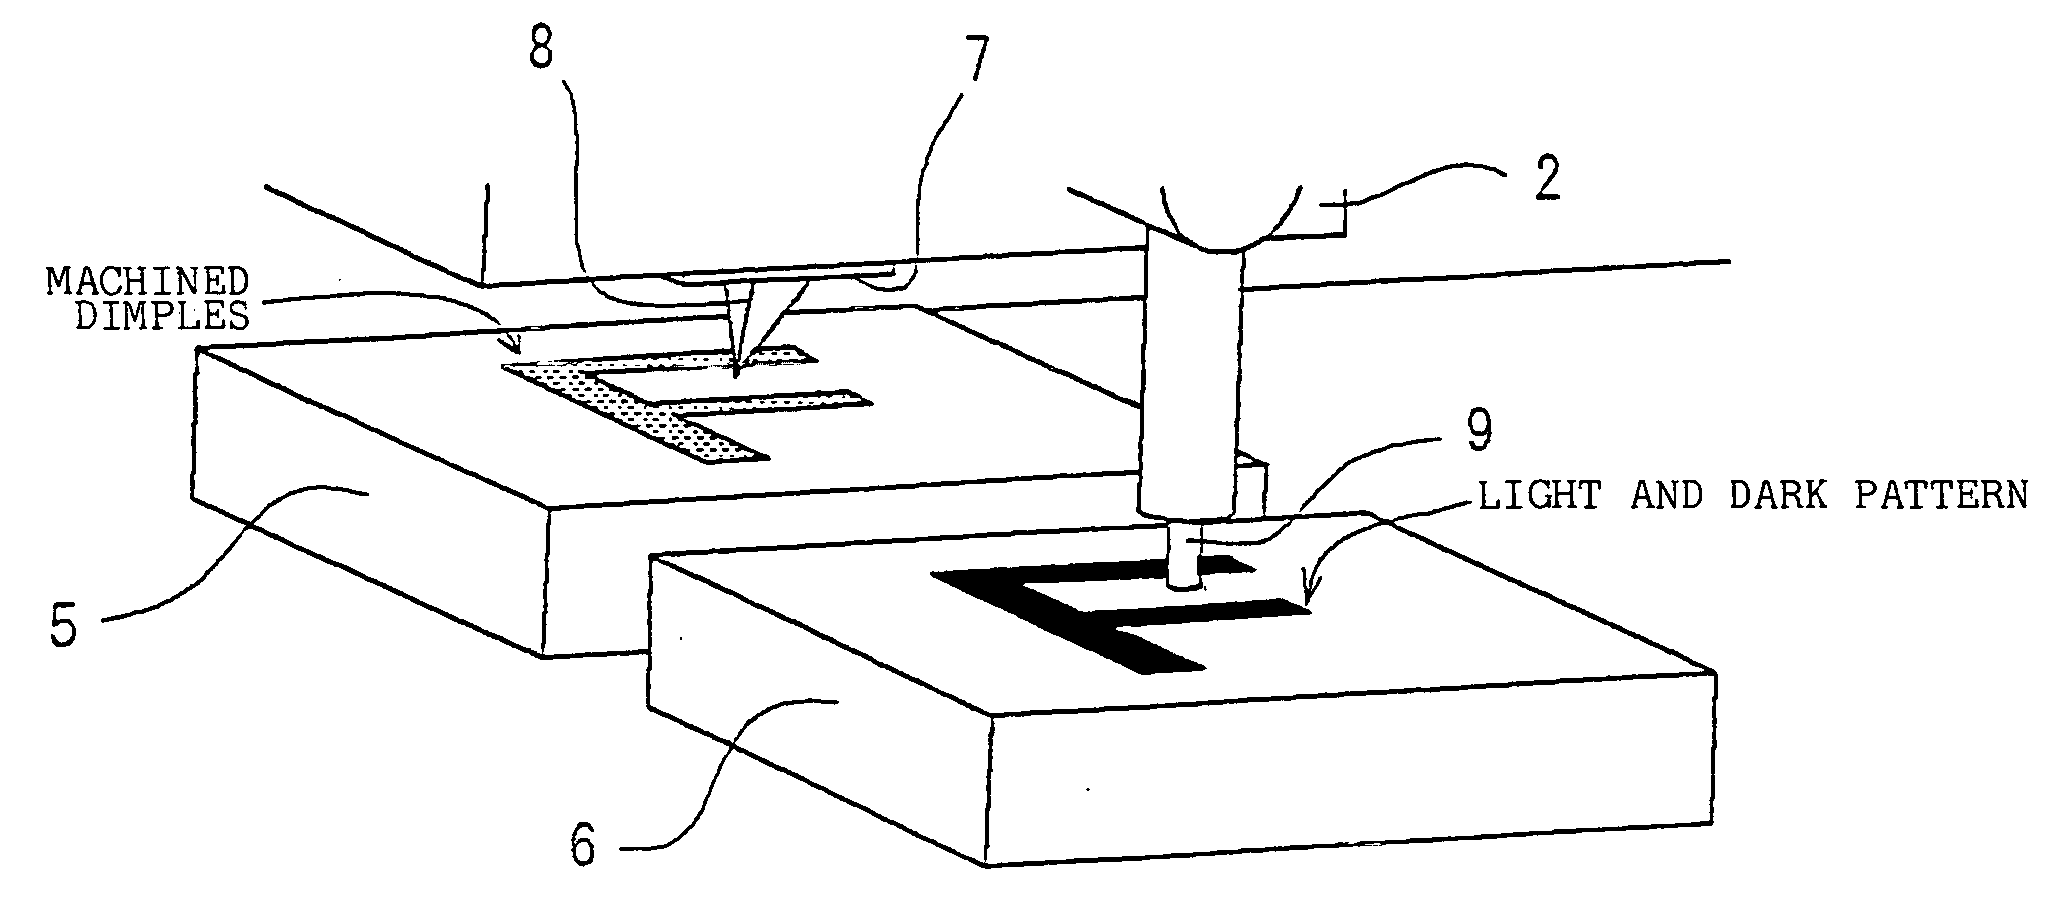 Machining apparatus